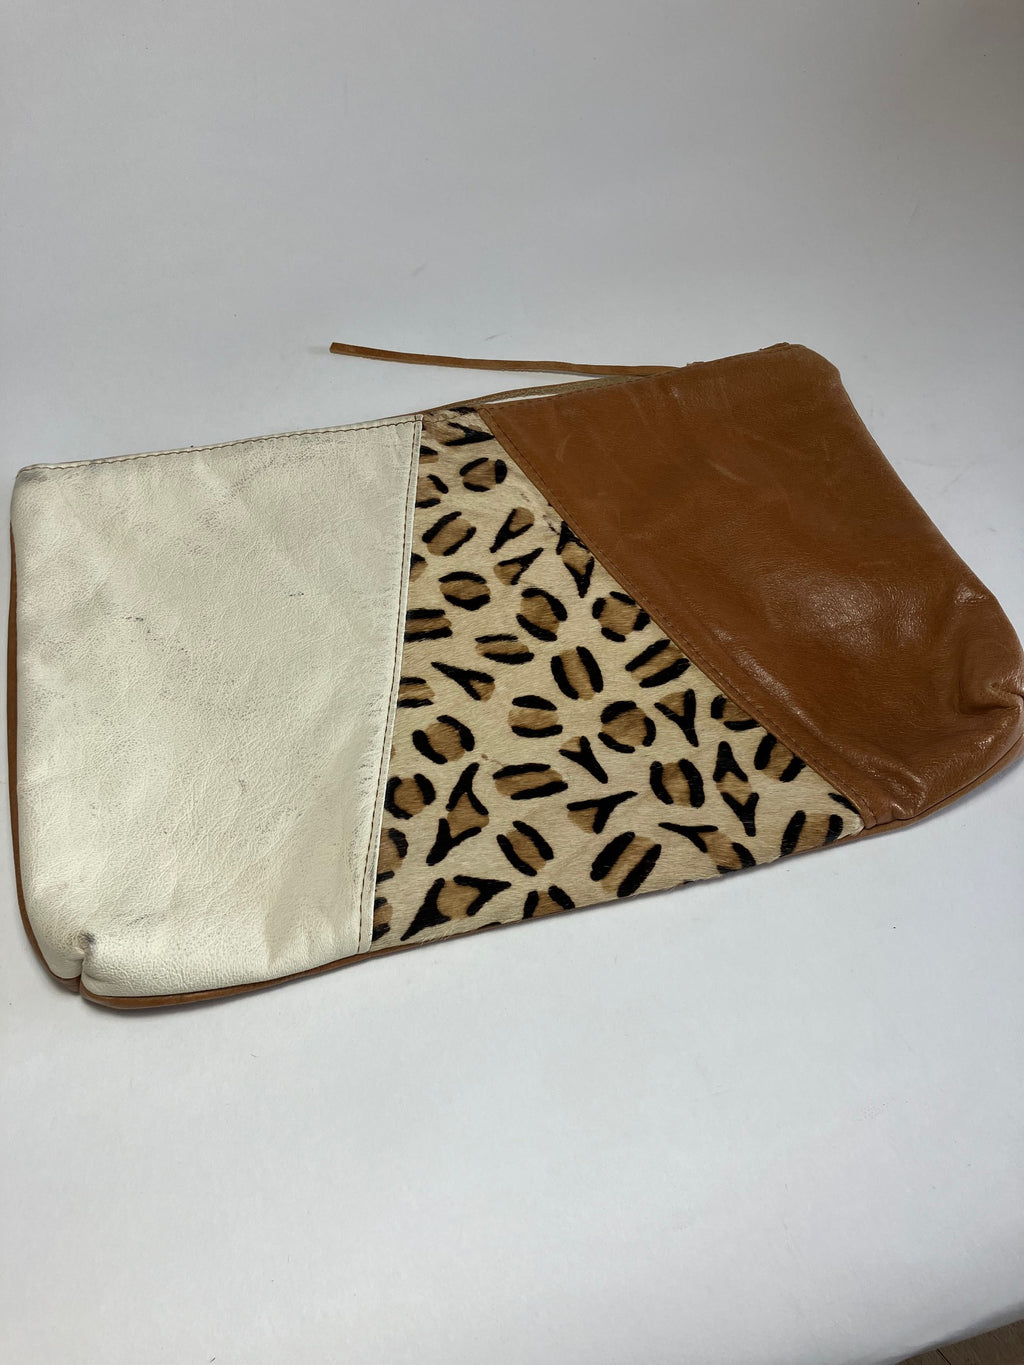 ÉCHANTILLON sac à main de soirée en cuir bruns tan, leopard et ivoire